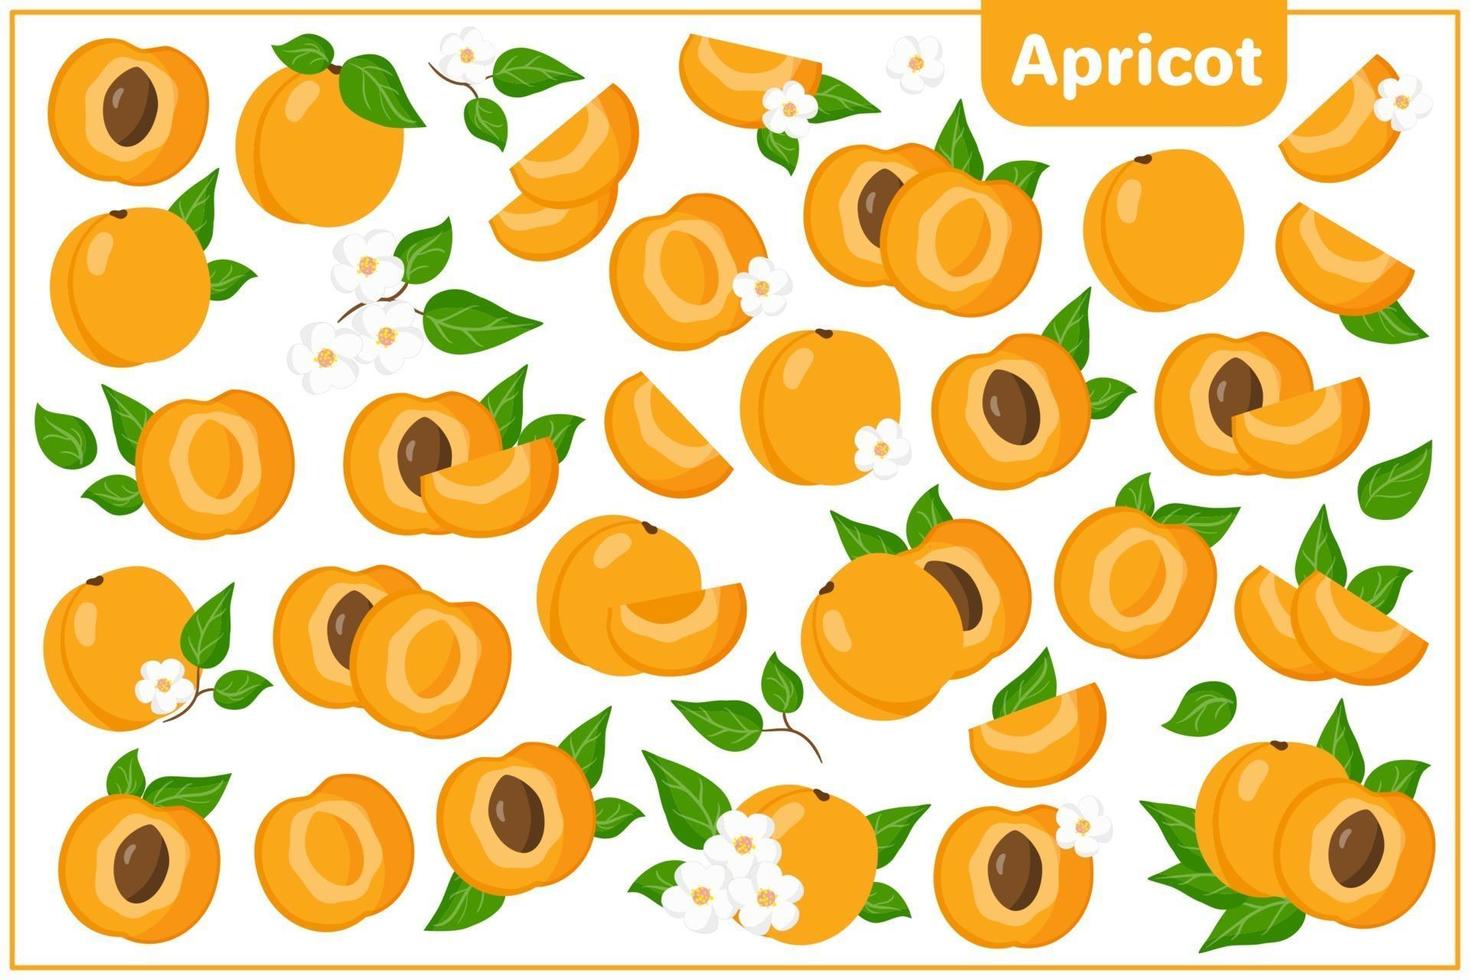 Satz Vektorkarikaturillustrationen mit exotischen Früchten, Blumen und Blättern der Aprikose lokalisiert auf weißem Hintergrund vektor